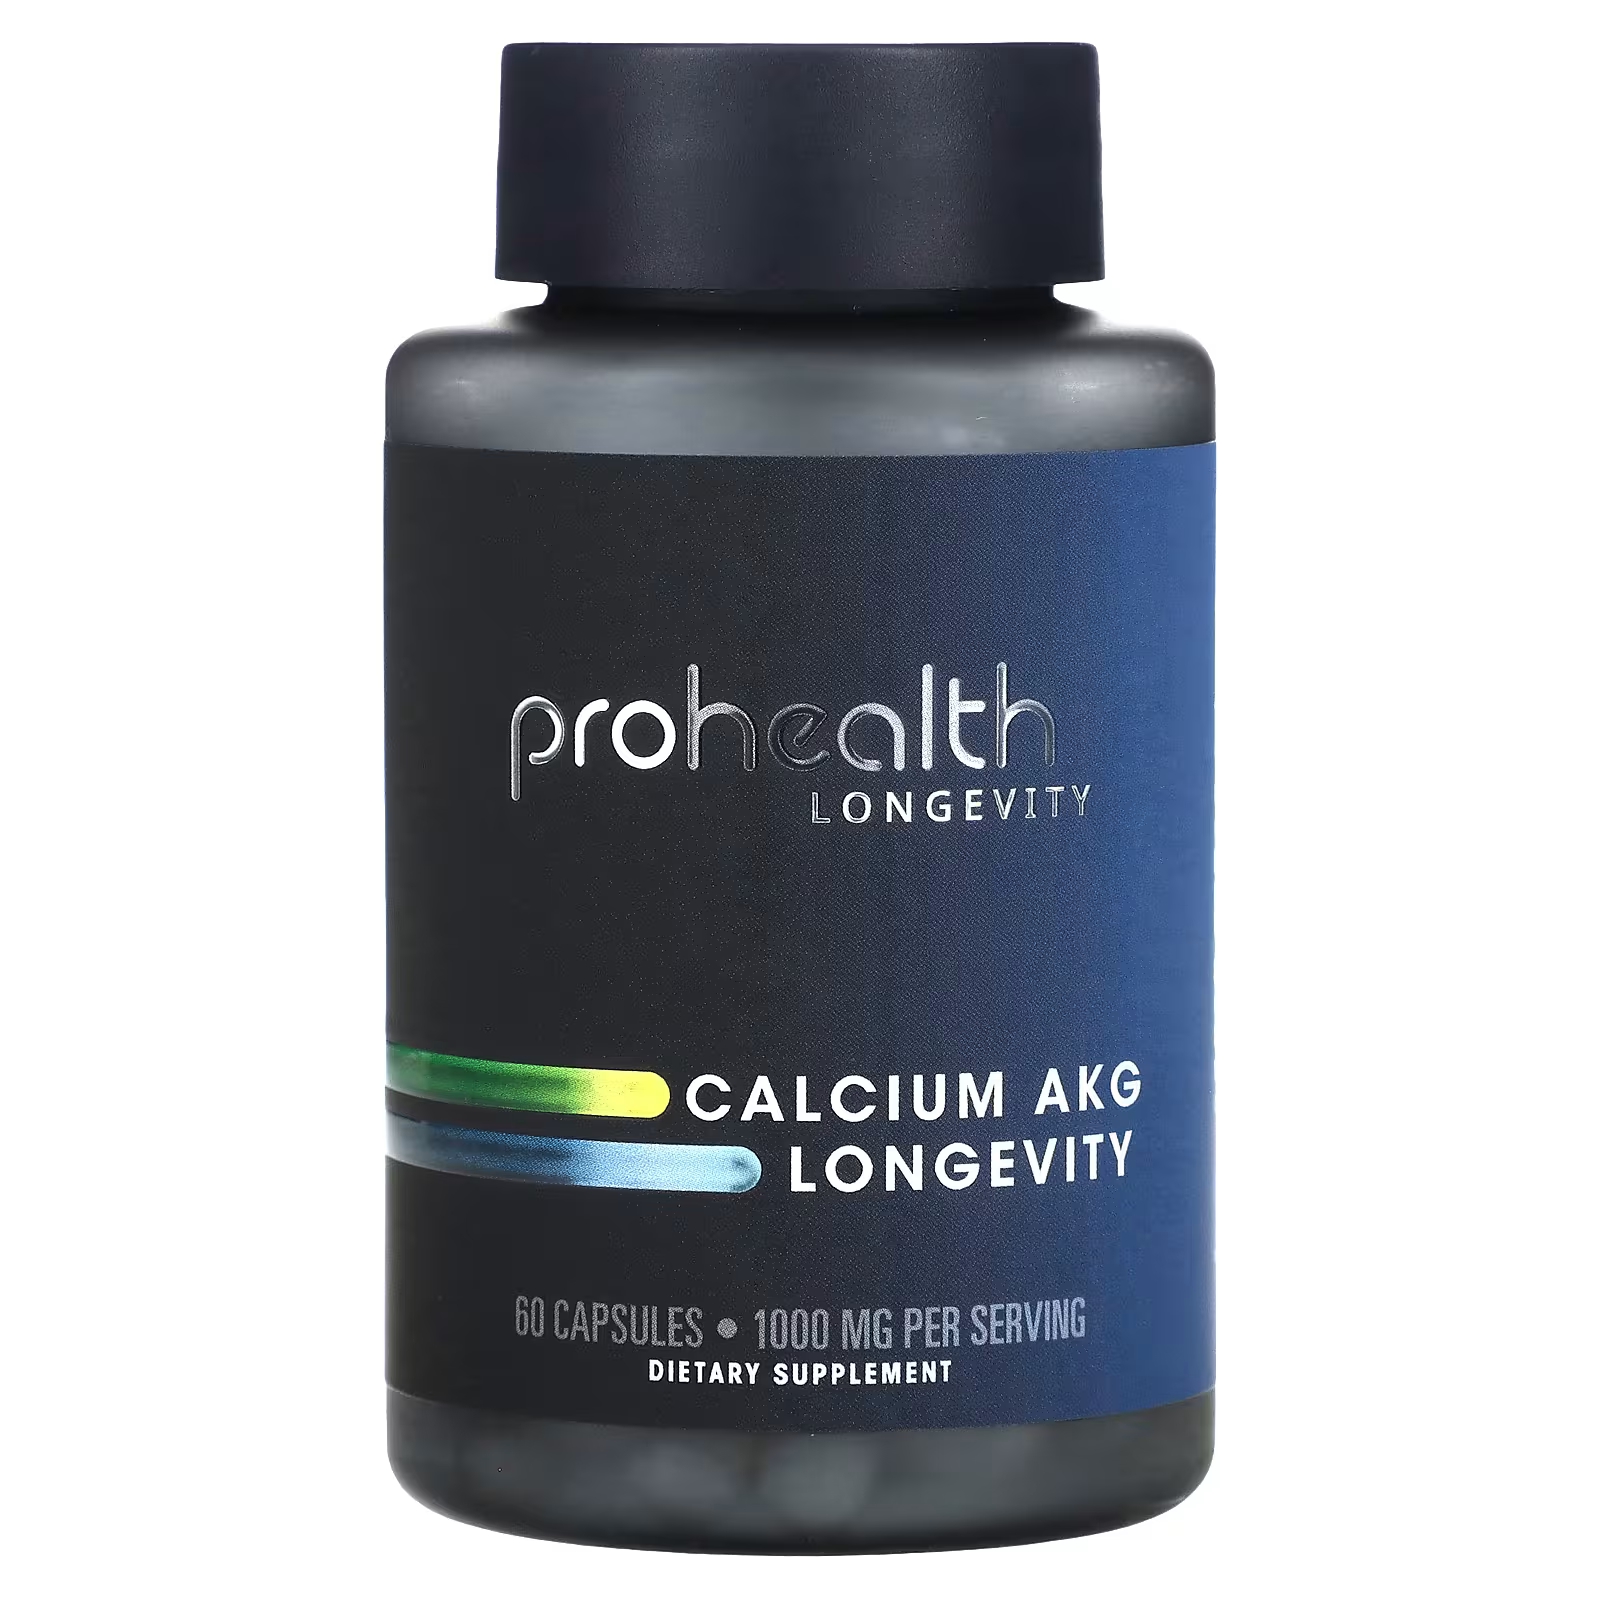 Пищевая добавка ProHealth Longevity Calcium AKG Longevity 1000 мг коллаген prohealth longevity longevity 690 г